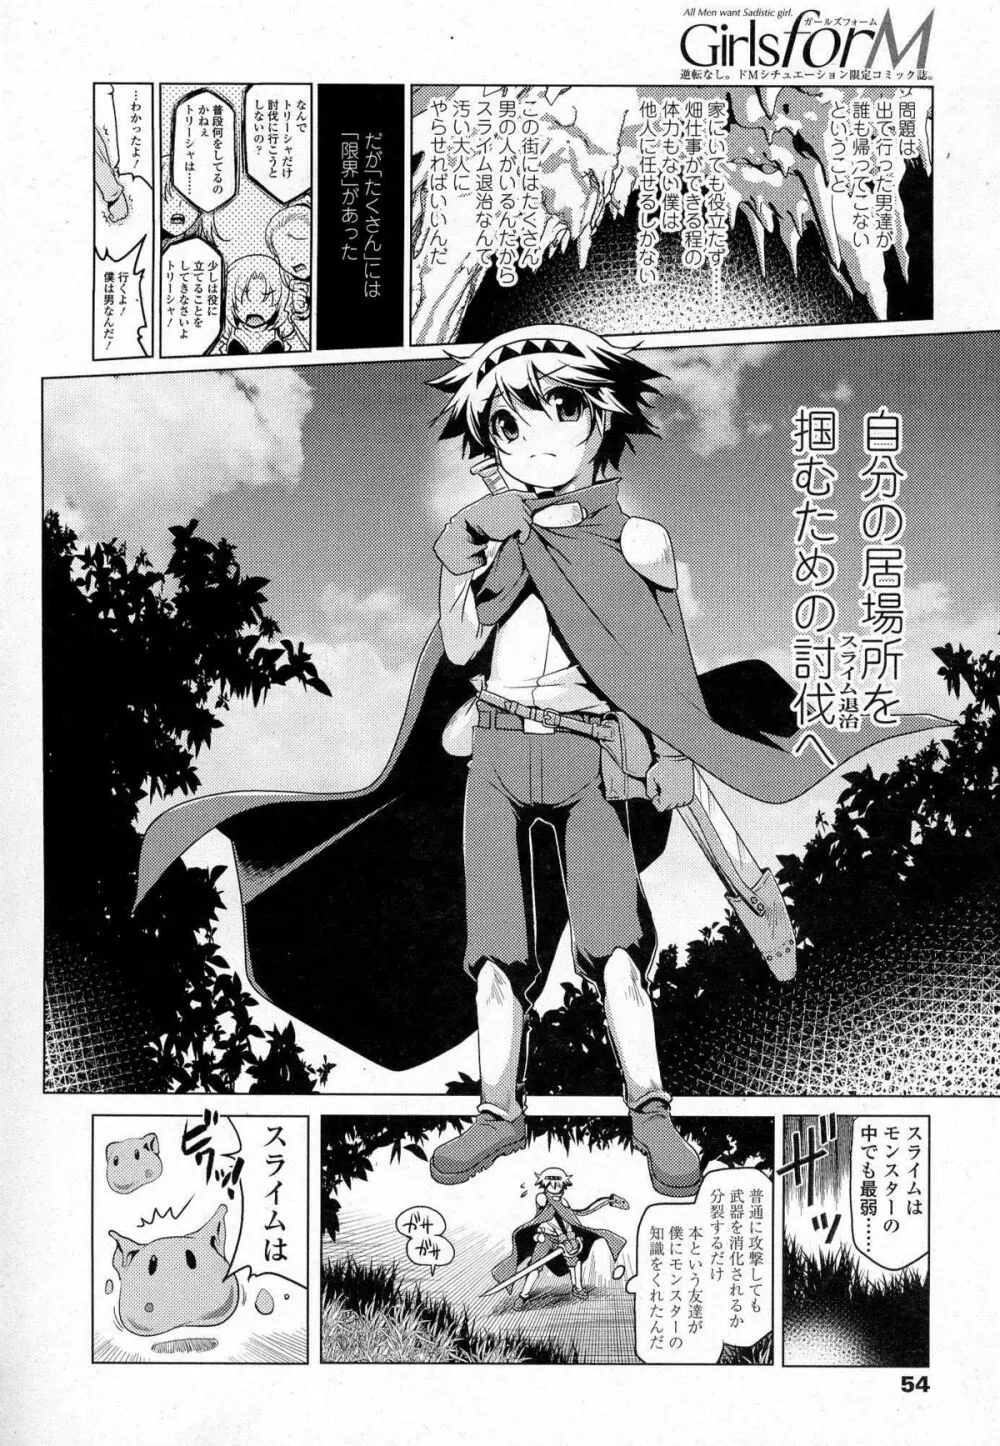 Akazawa RED (あかざわRED)スライム娘の誘惑に負けて更に犯される漫画(上) 1ページ